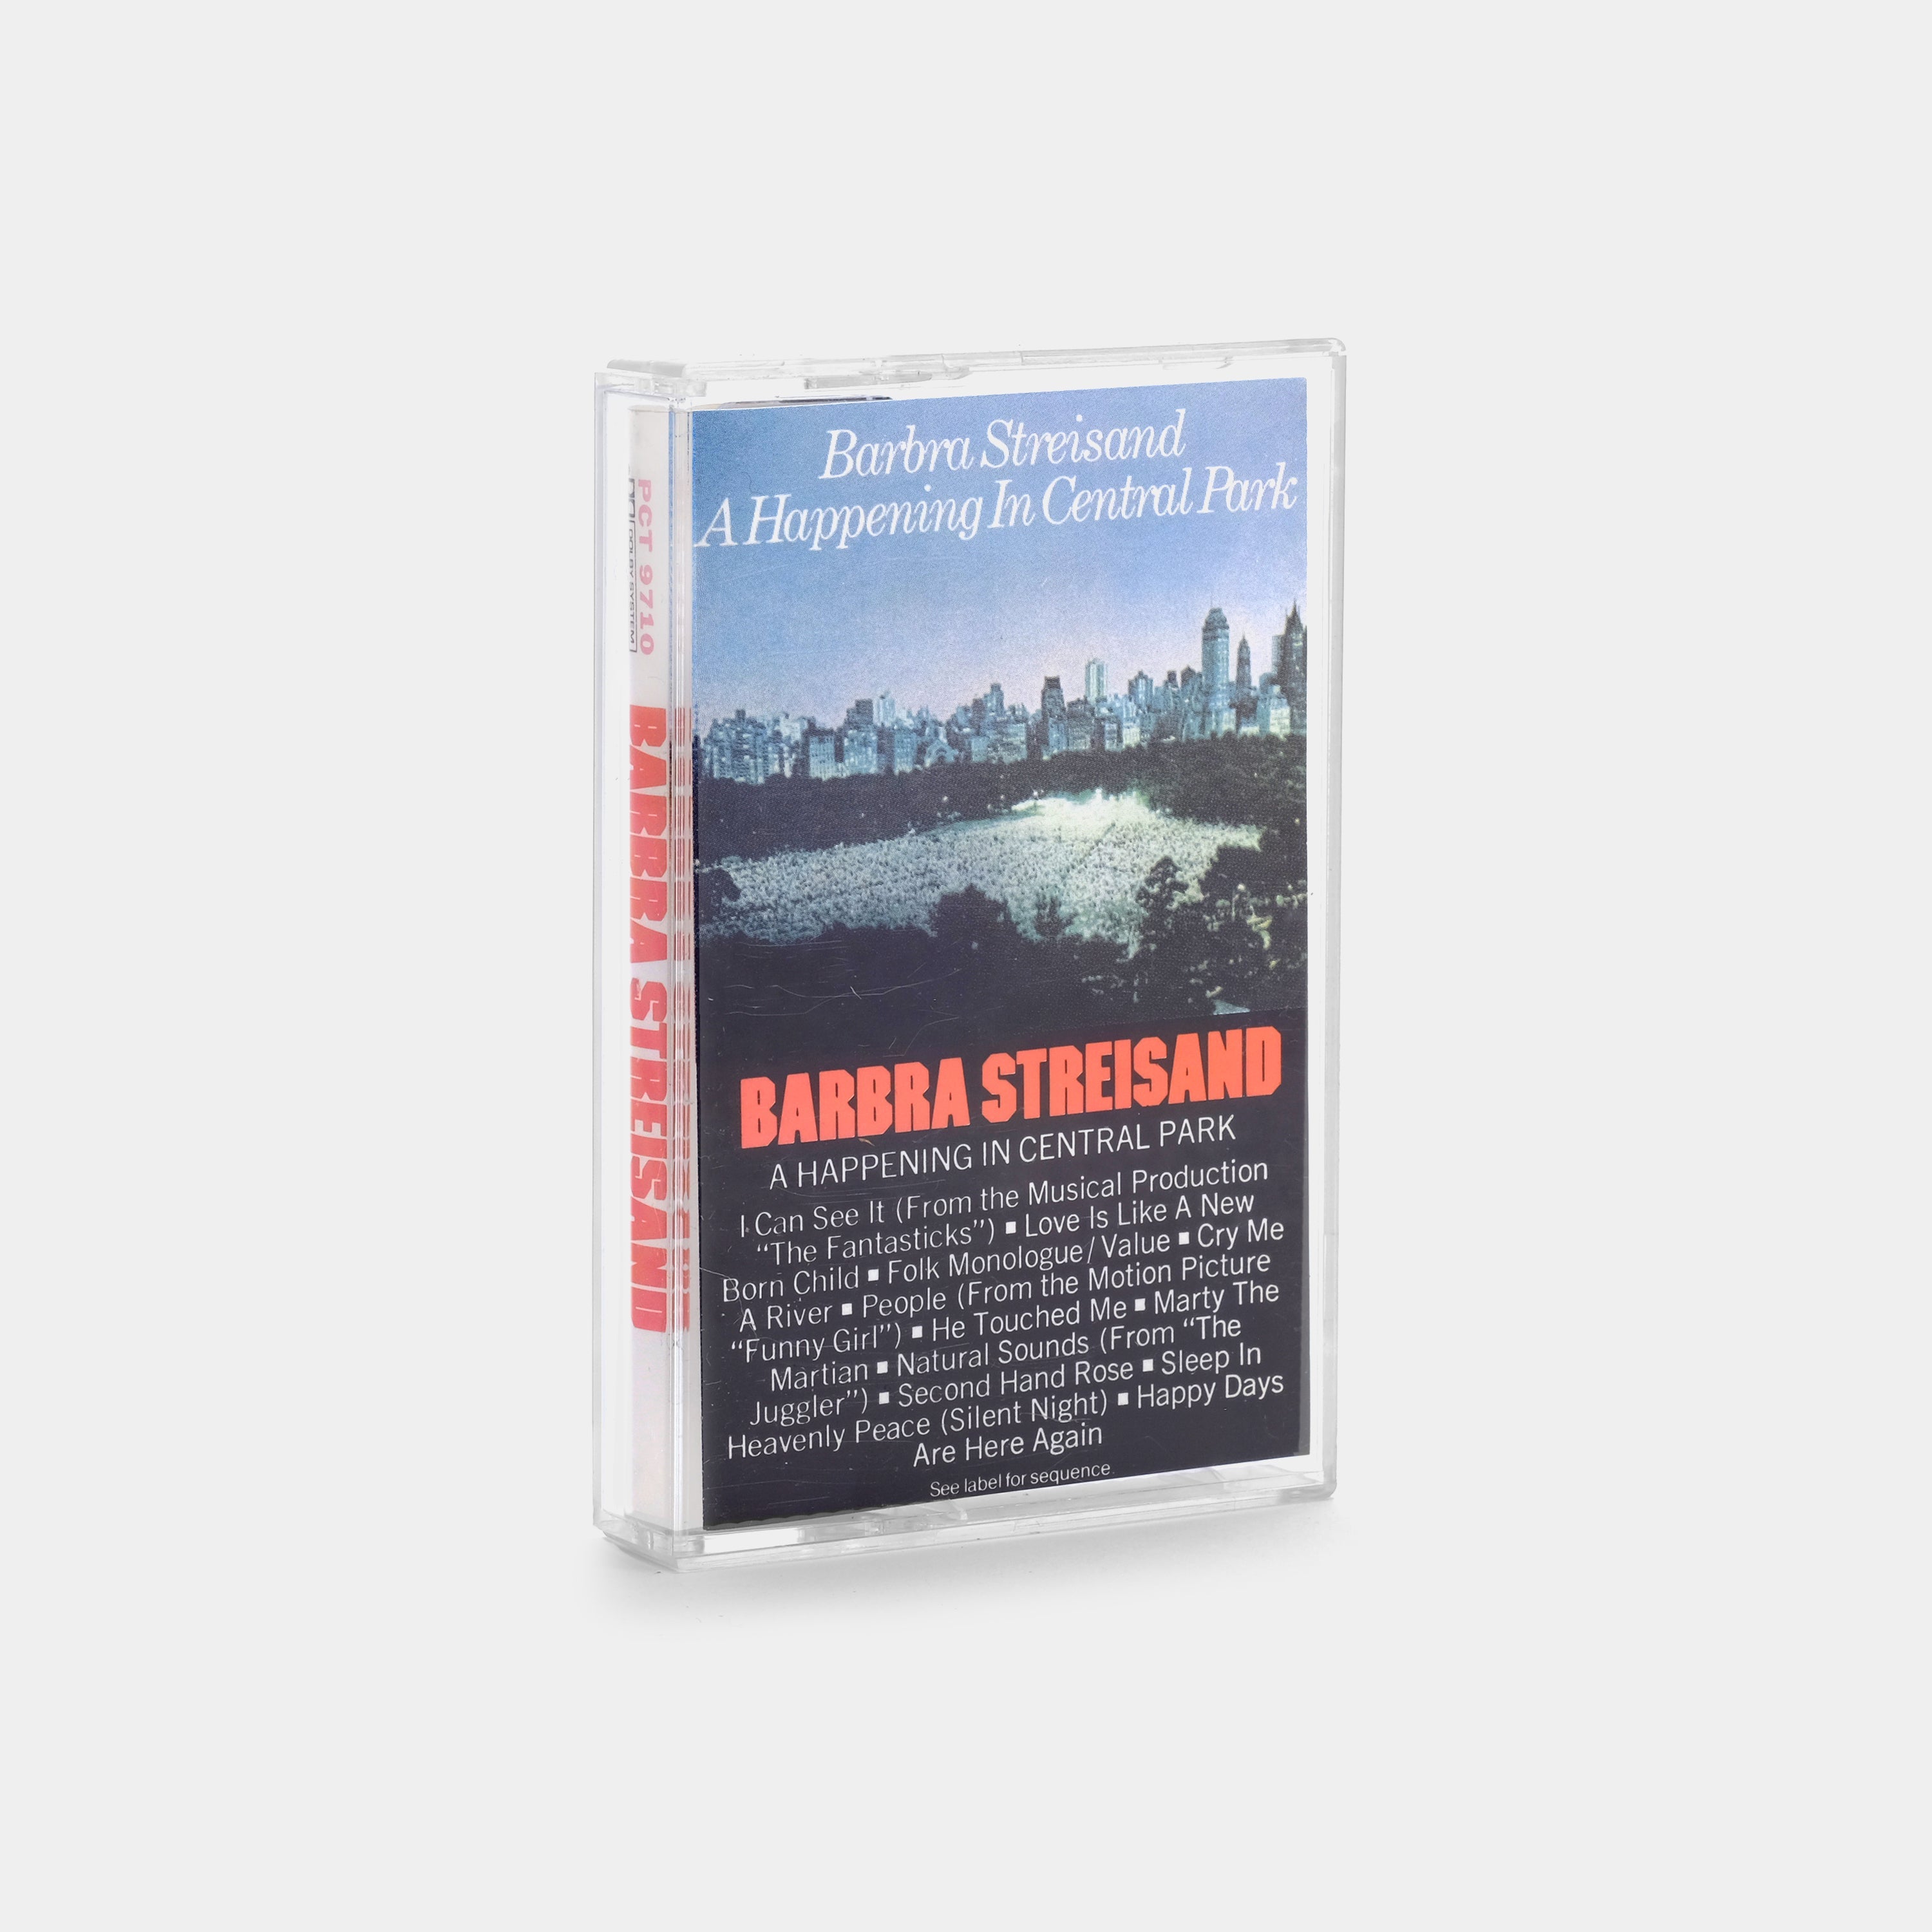 Barbra Streisand - A Happening In Central Park Cassette Tape